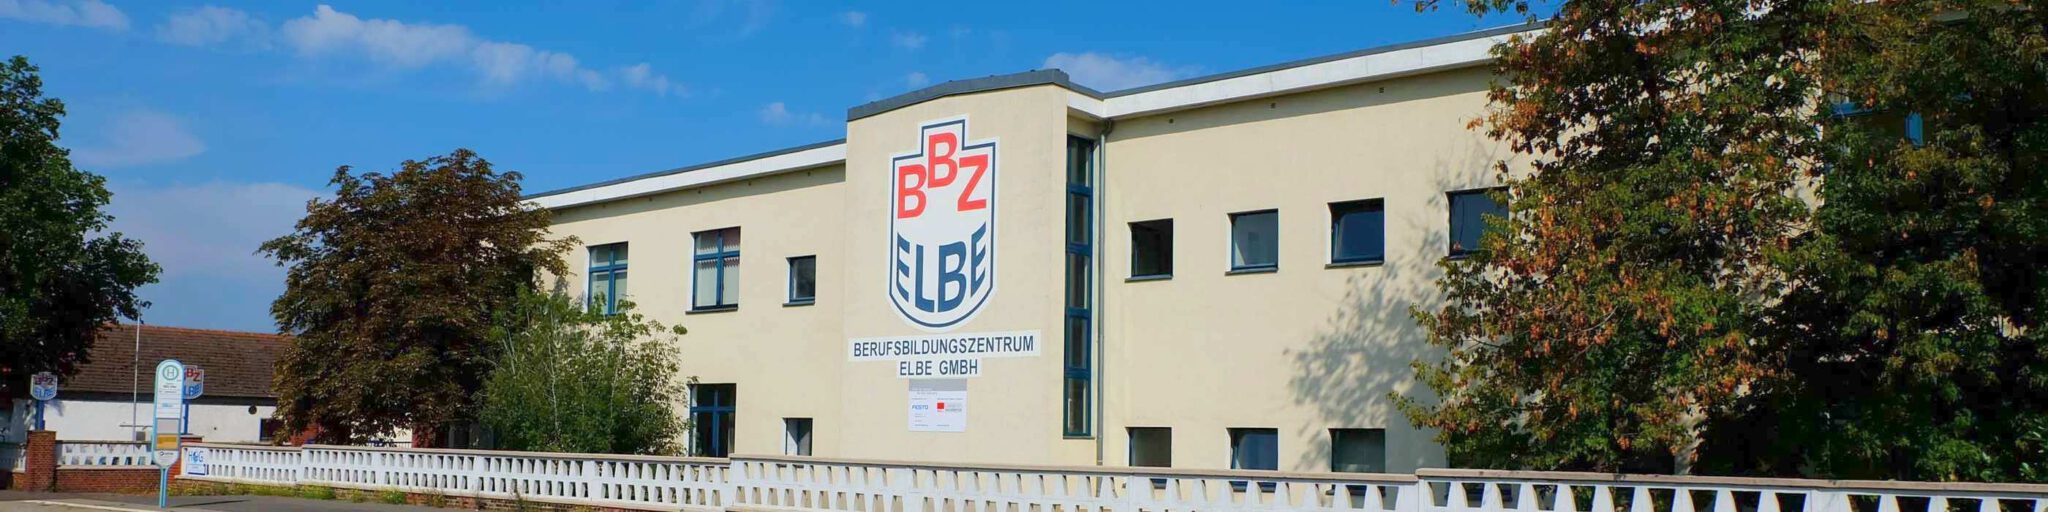 Bilder Berufsbildungszentrum Elbe GmbH